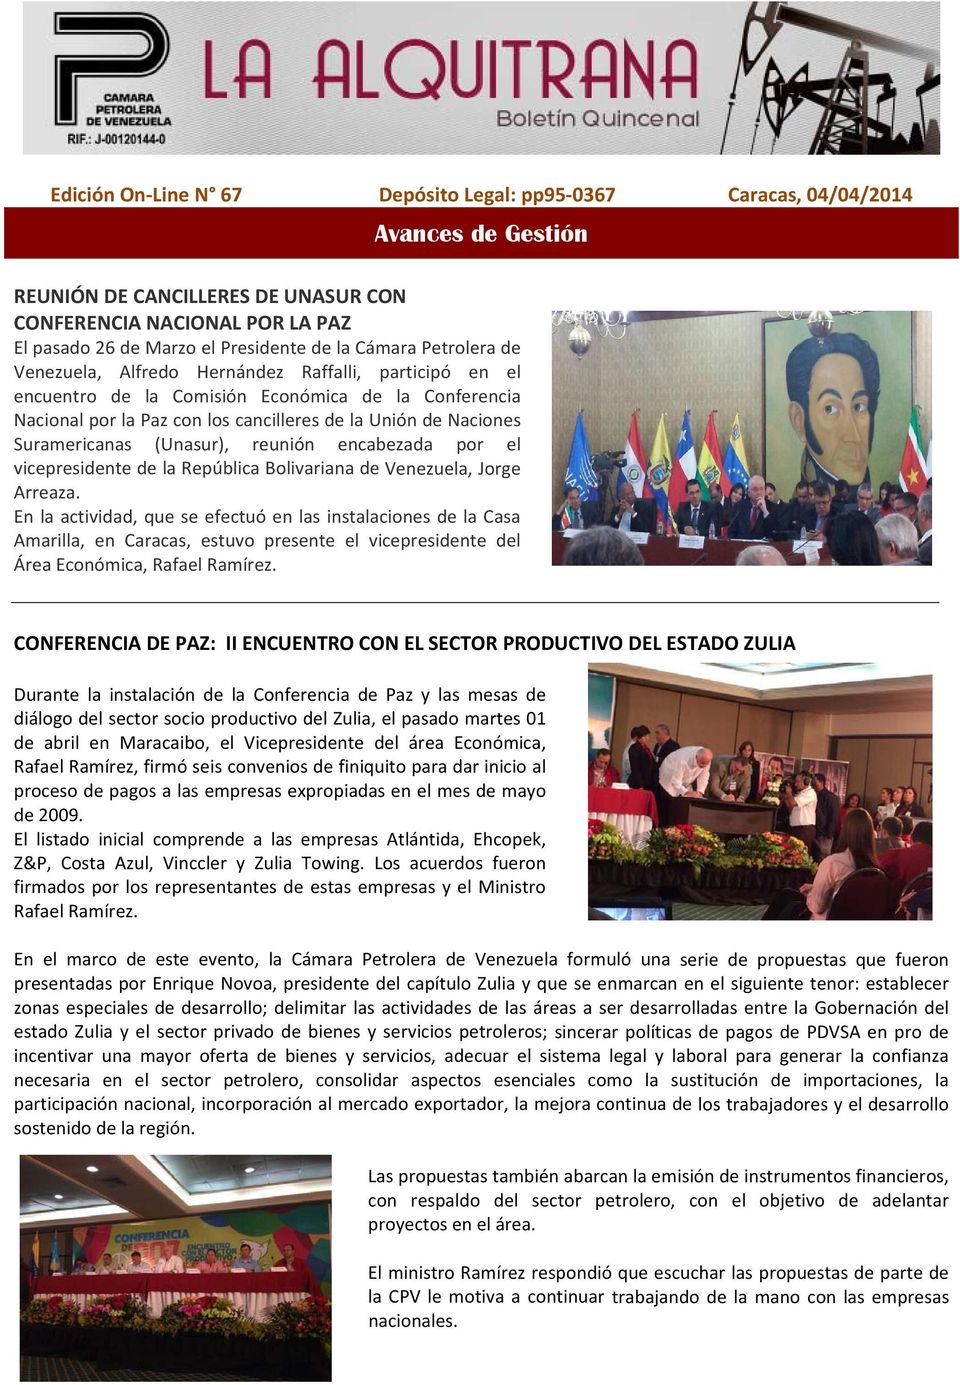 Suramericanas (Unasur), reunión encabezada por el vicepresidente de la República Bolivariana de Venezuela, Jorge Arreaza.